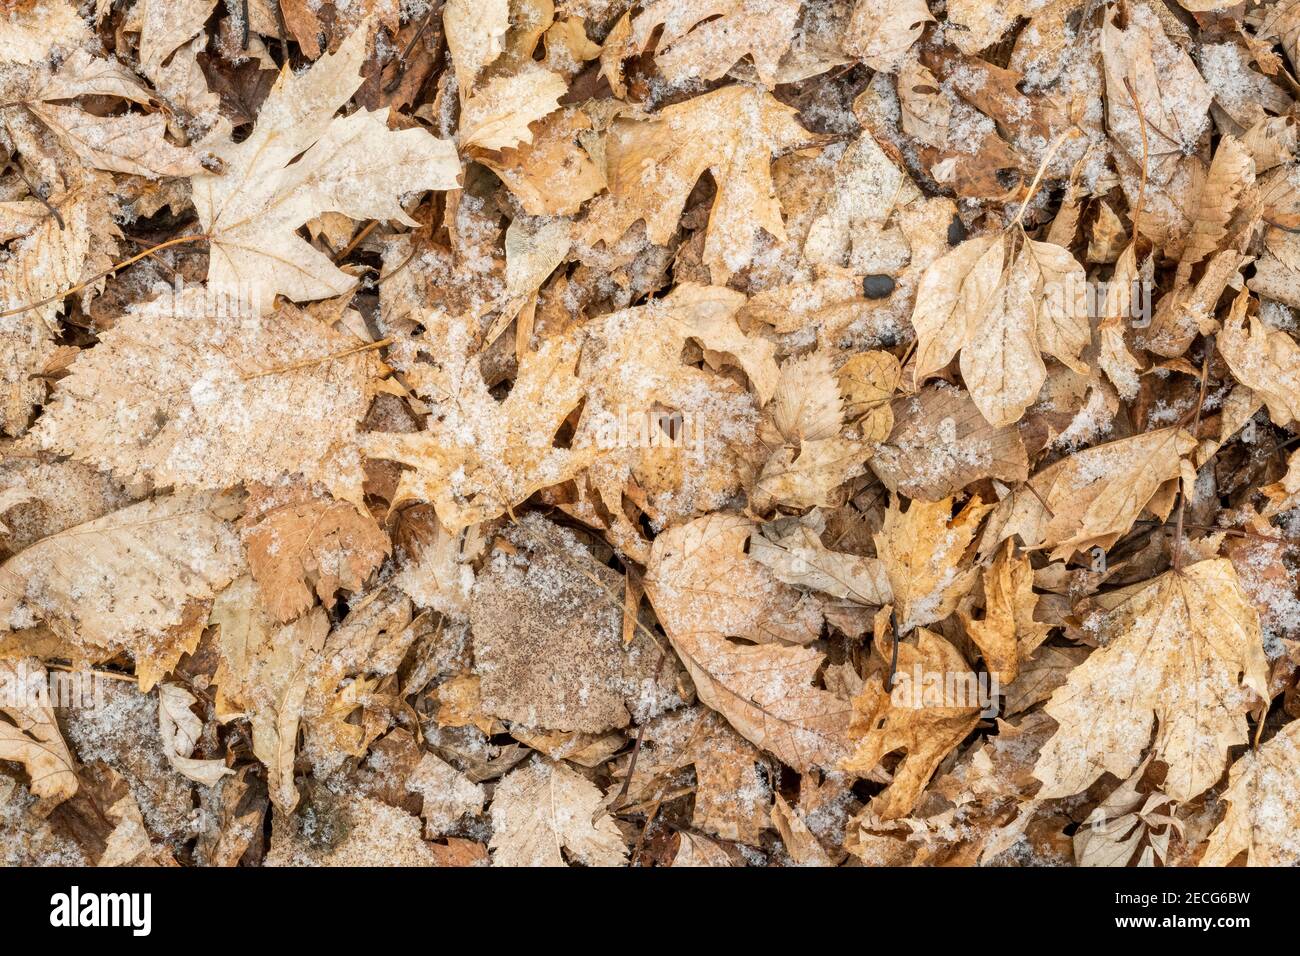 Litière de feuilles de chêne et d'Elm sur le sol forestier légèrement recouvert de neige, E USA, par Dominique Braud/Dembinsky photo Assoc Banque D'Images